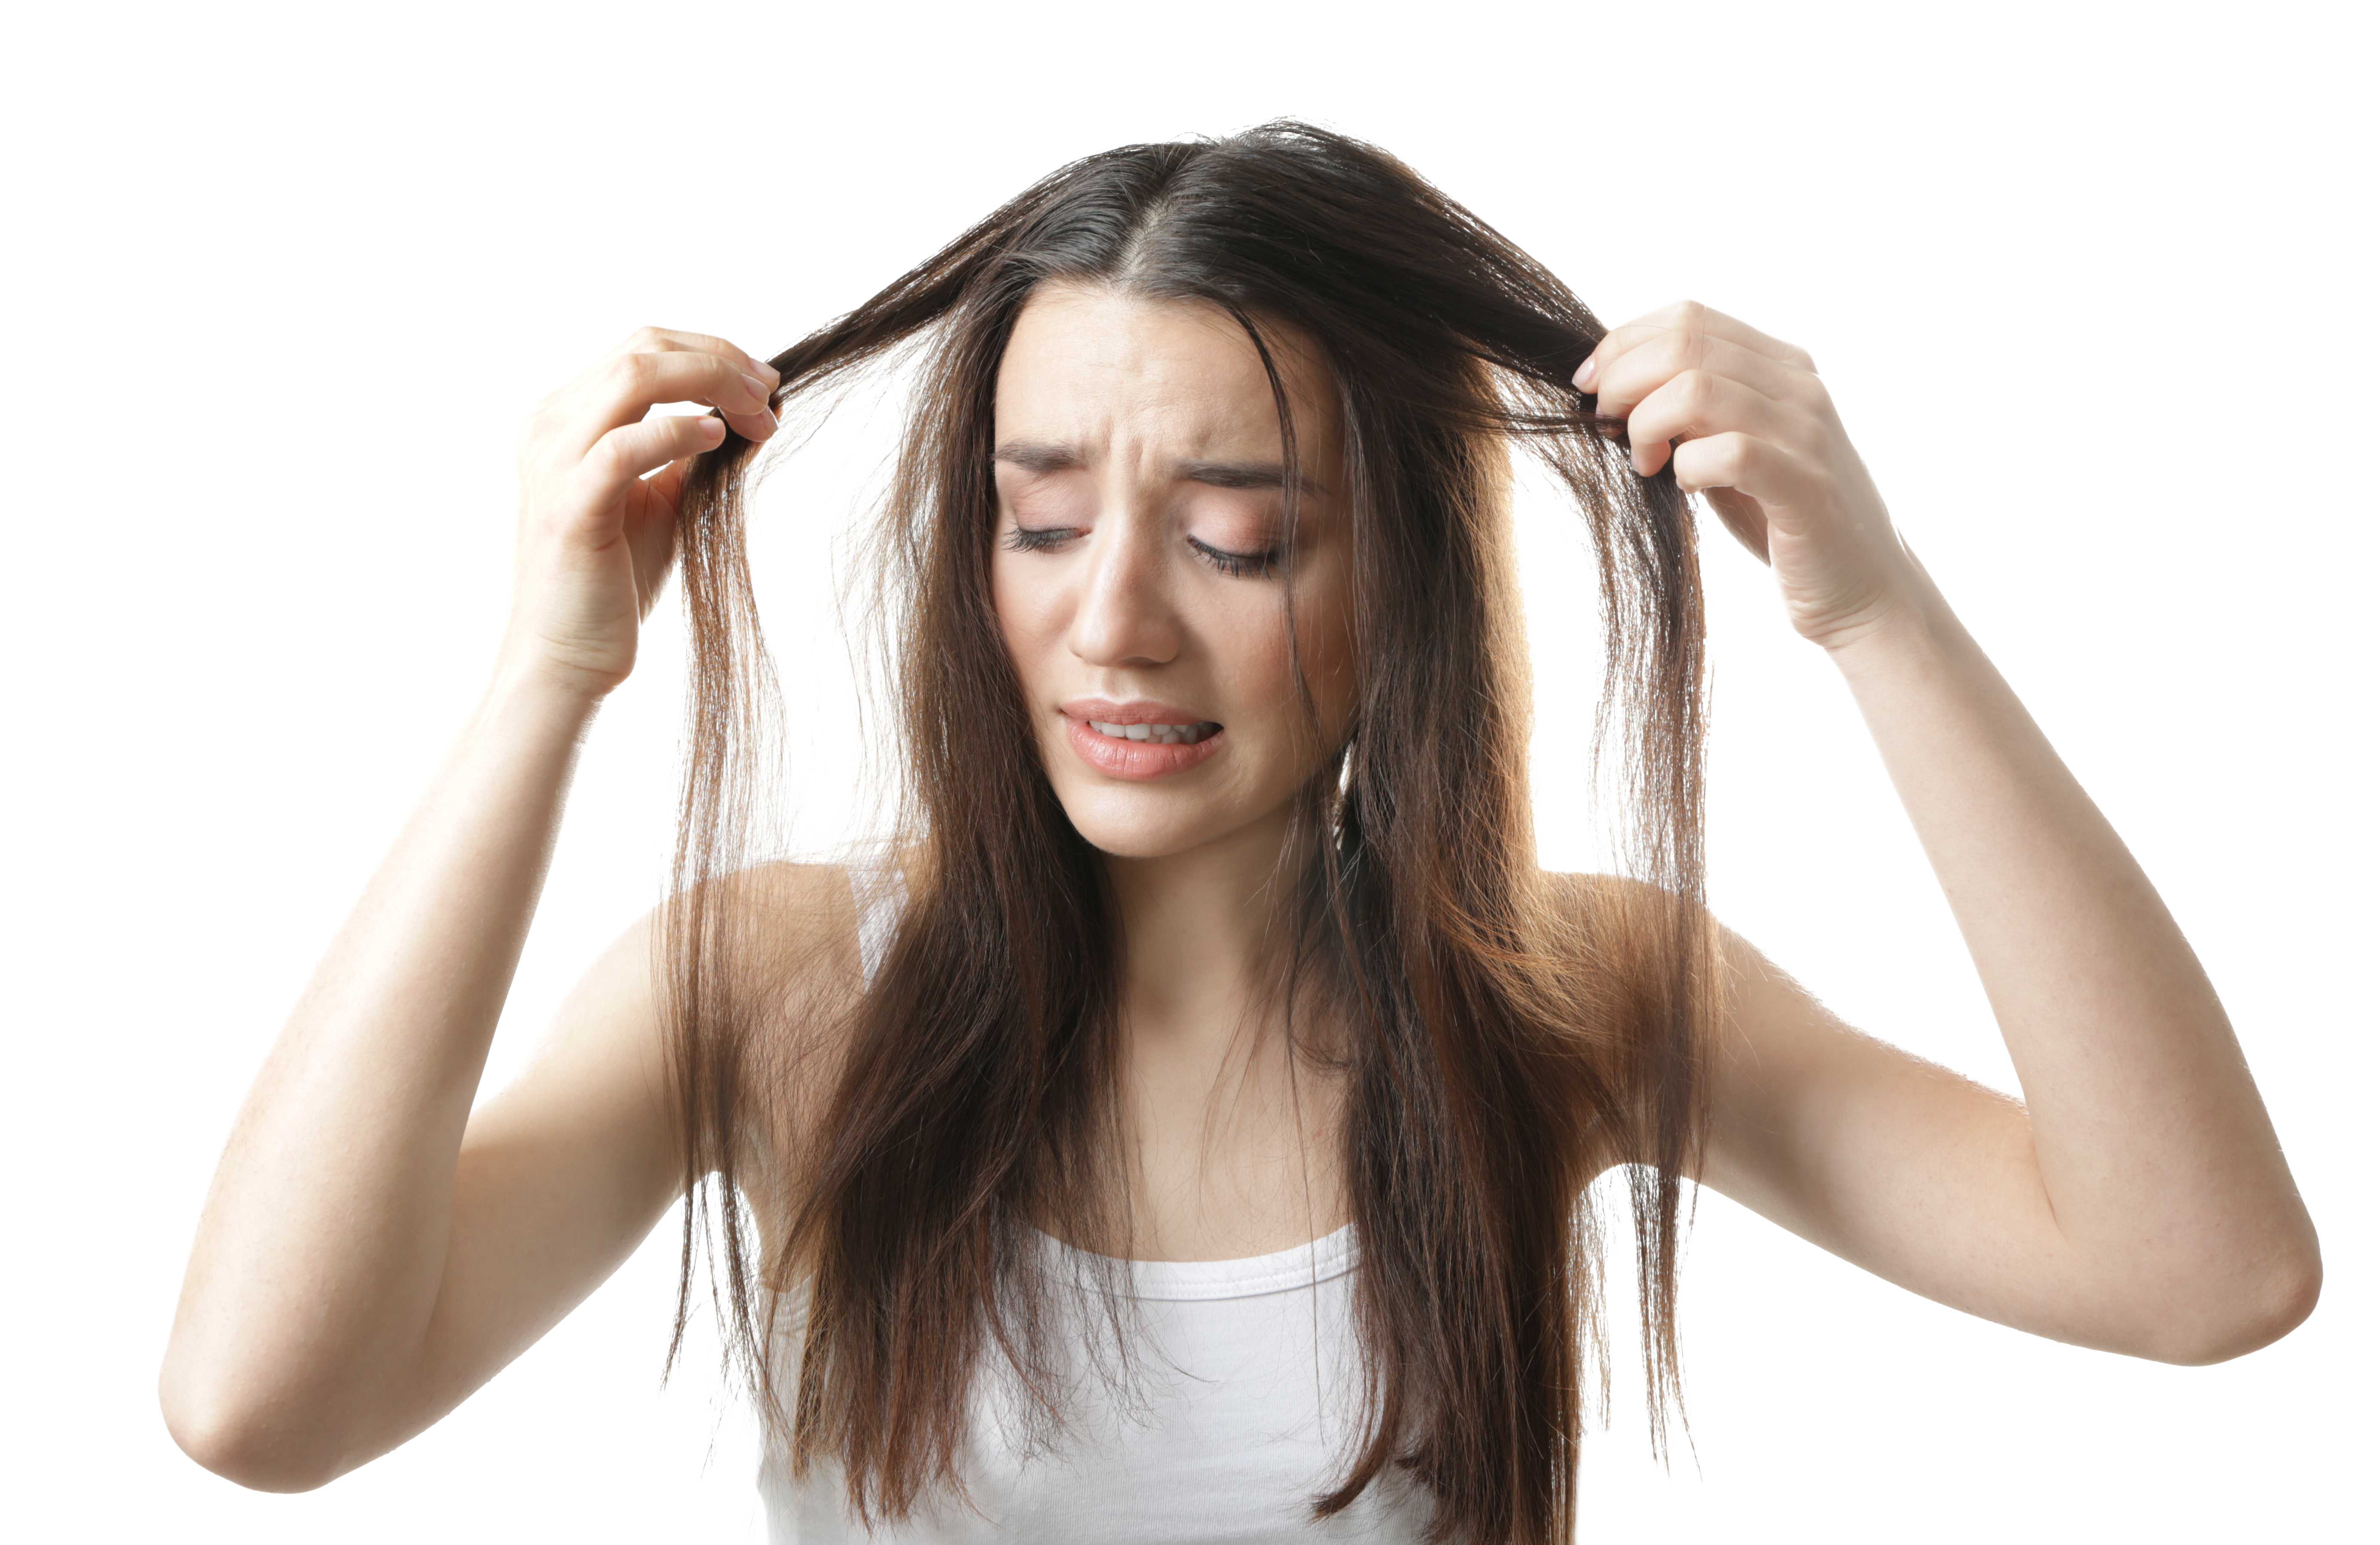 Выпадение волос на нервной почве, от стресса: лечение, могут ли от нервов теряться локоны и как это остановить